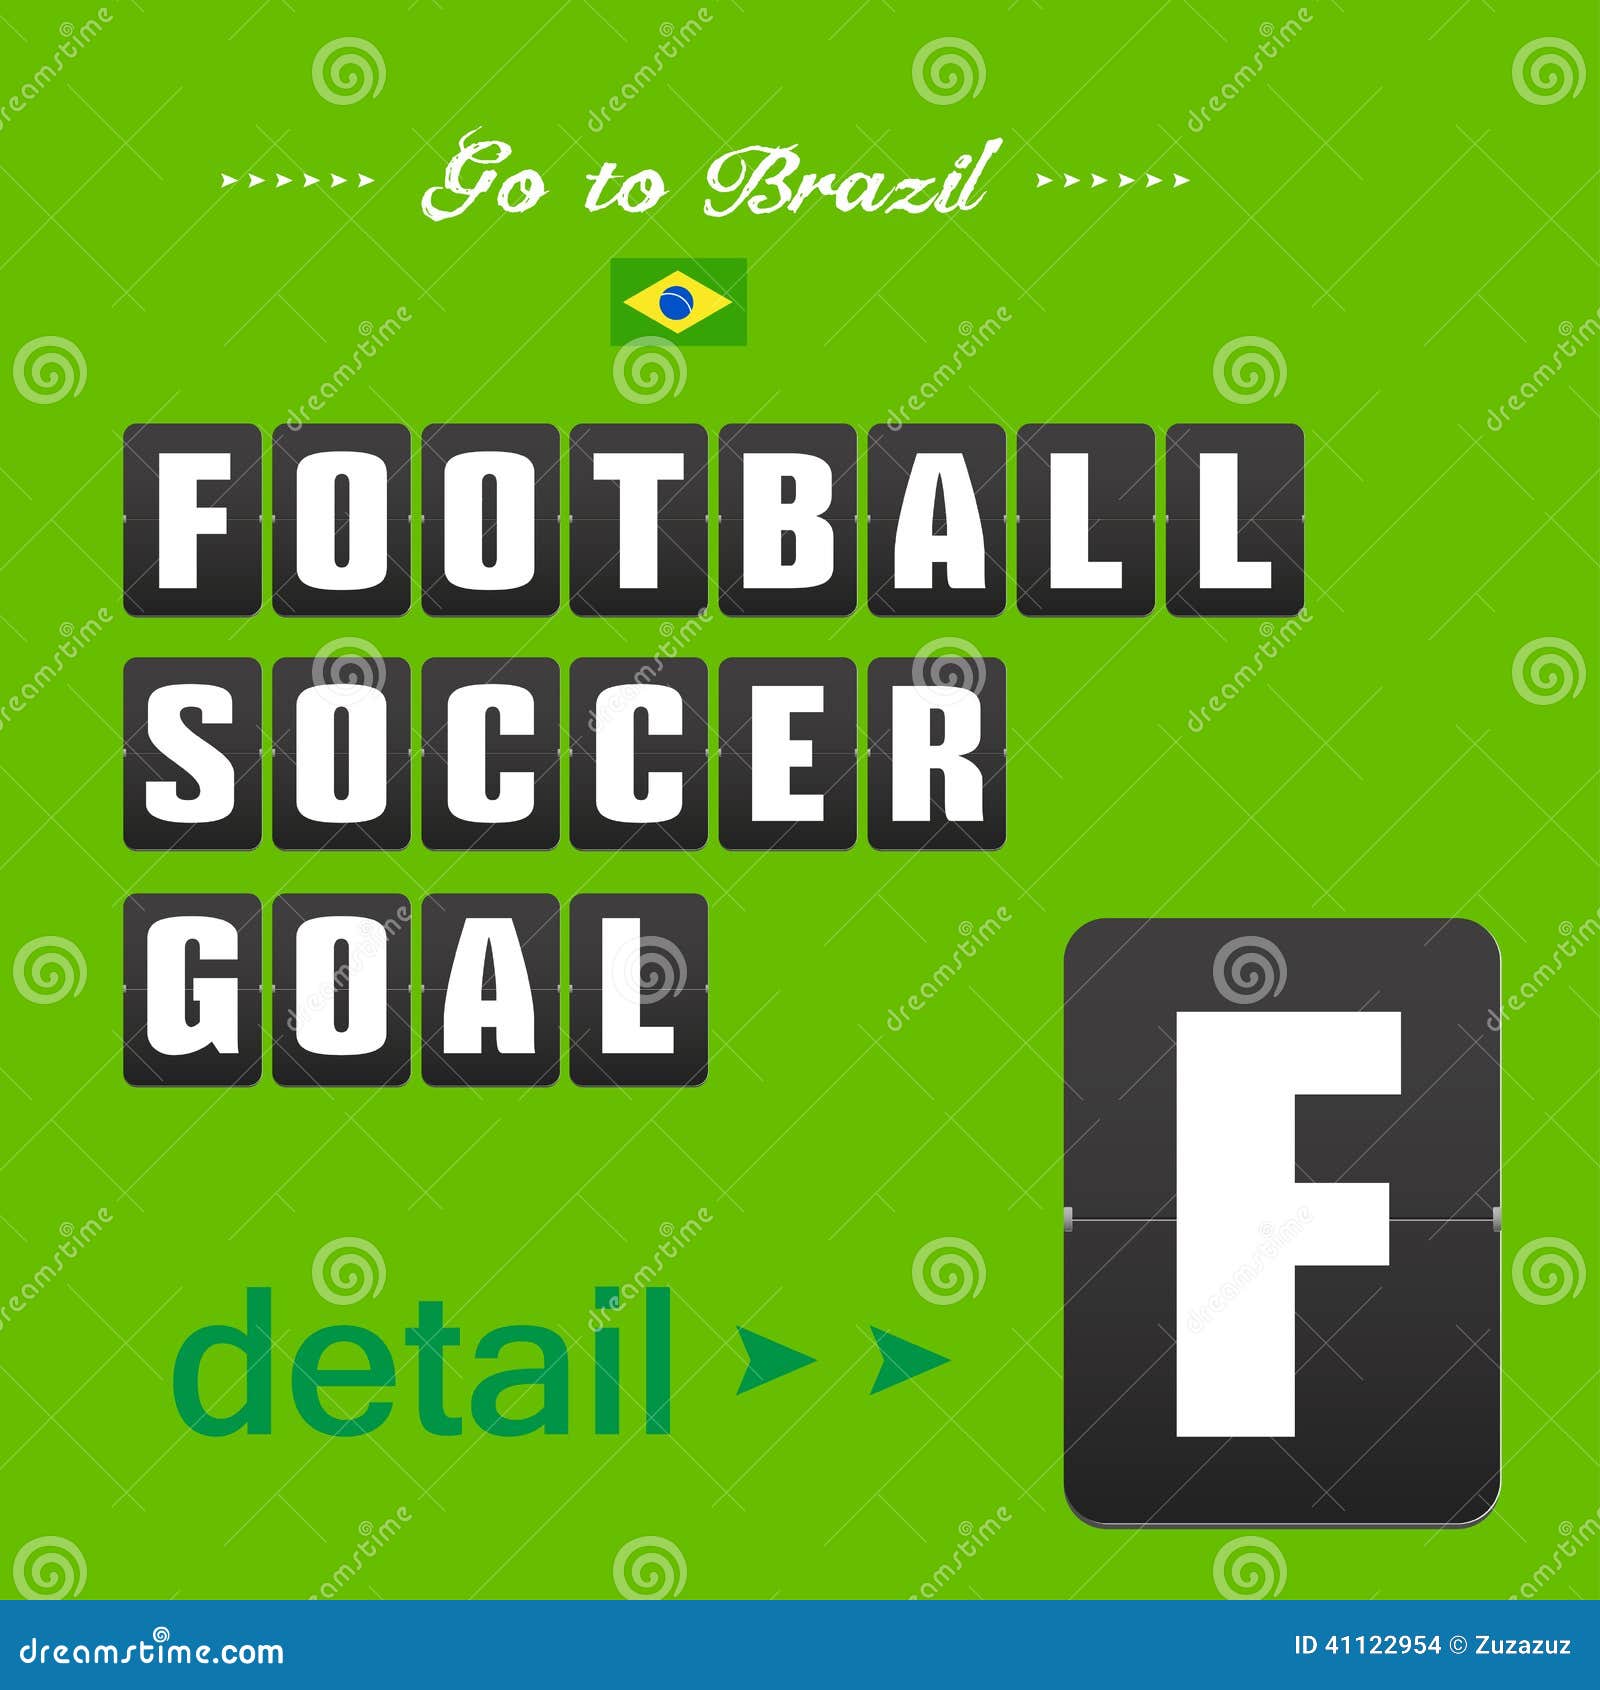 Football Soccer Goal Panels Stock Vector Illustration of letters